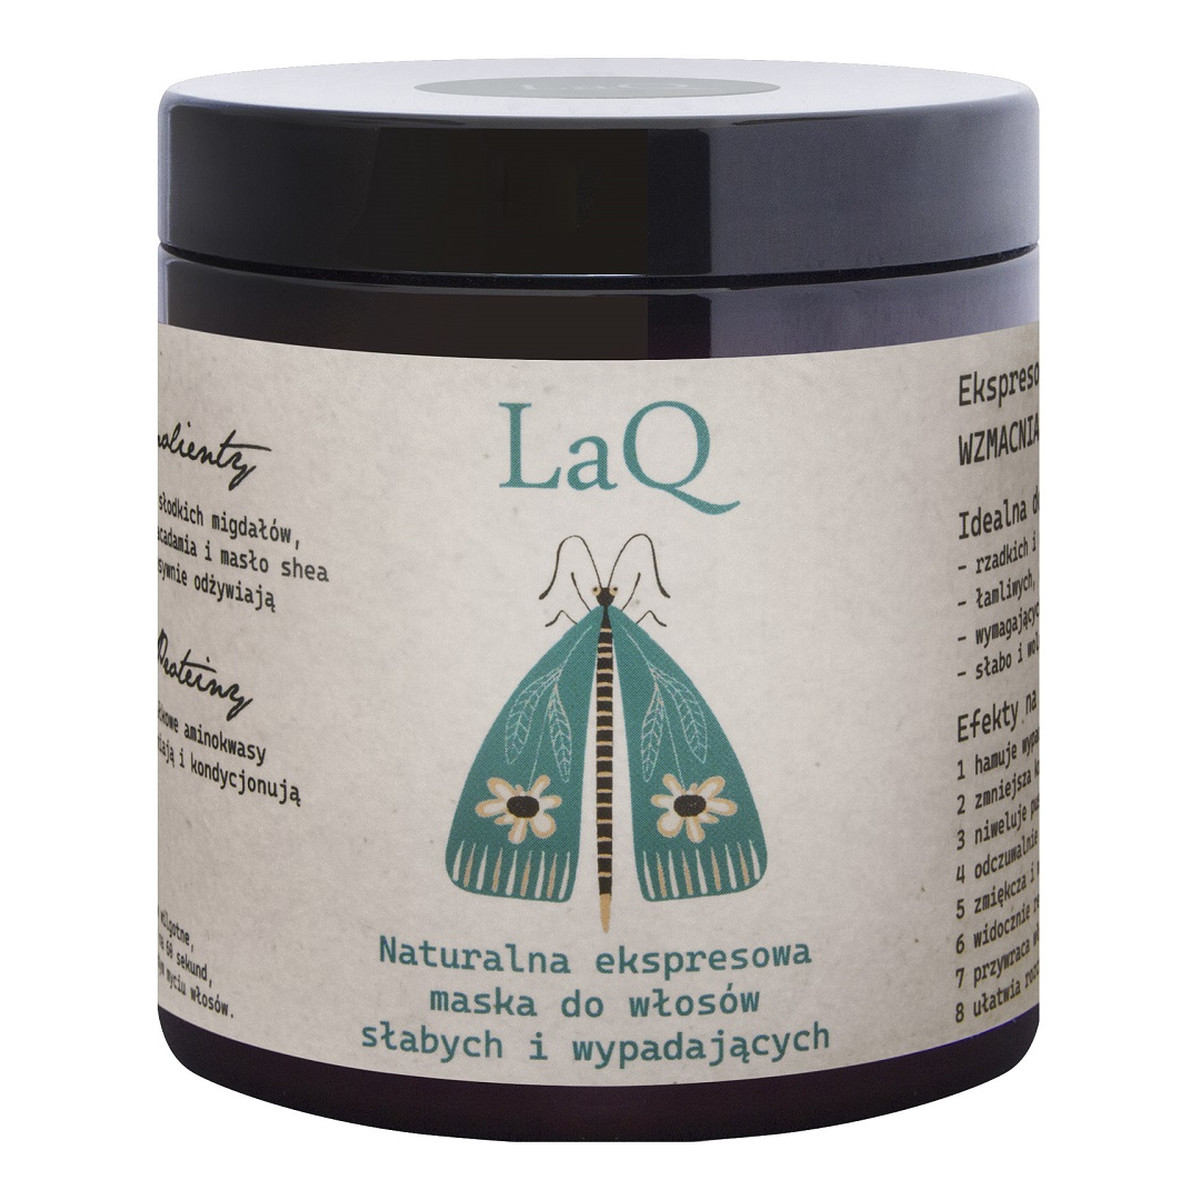 Laq Ekspresowa maska do włosów wzmacniająco-odżywcza 8w1 250ml